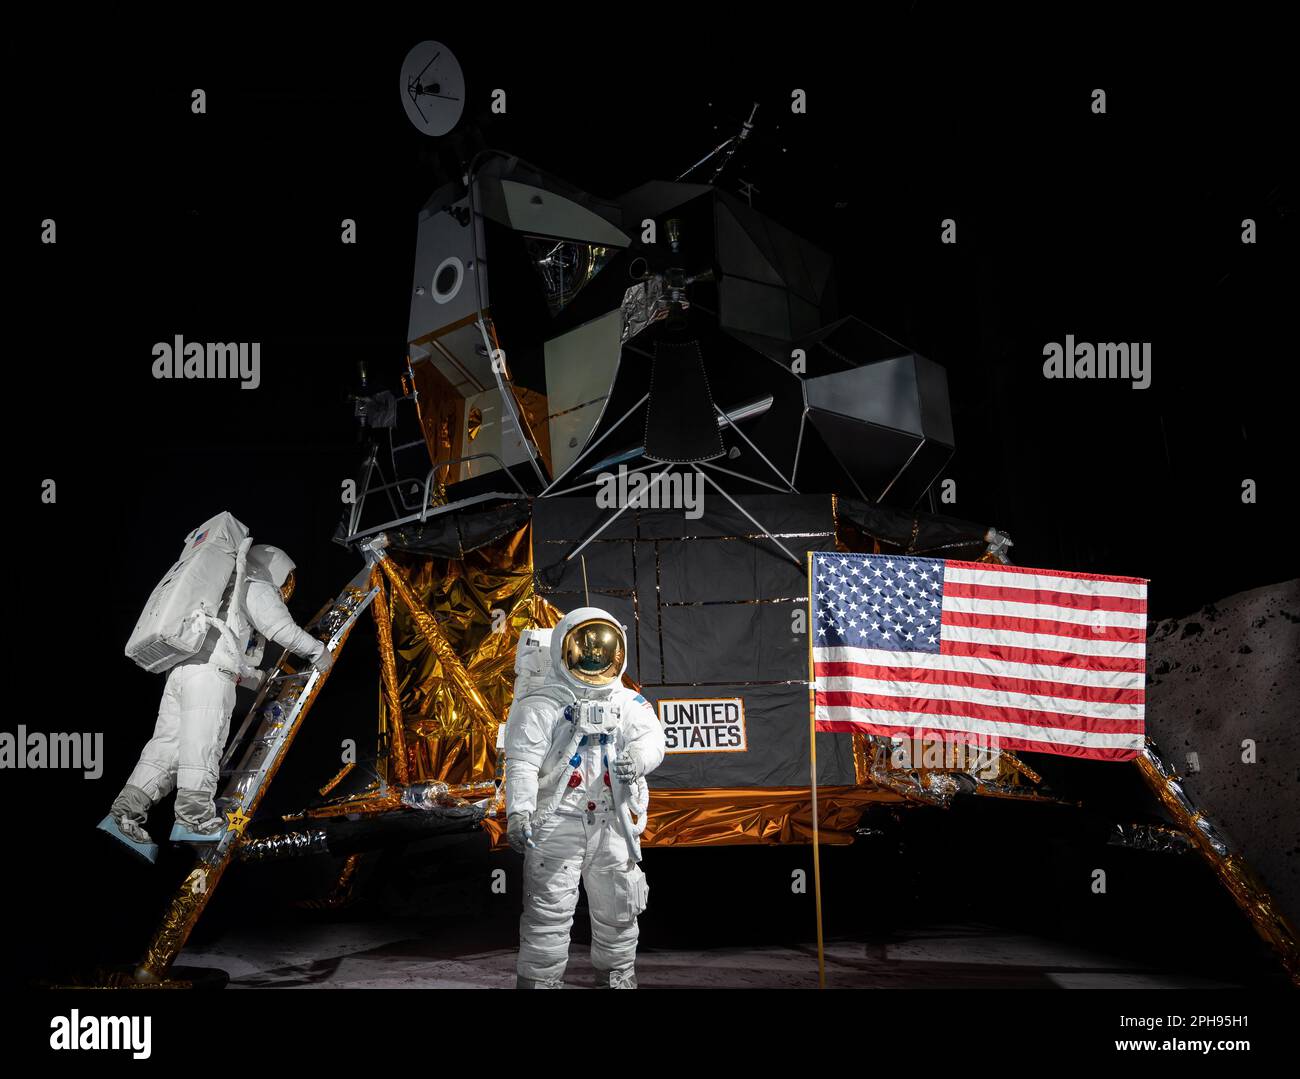 Deux astronautes se tenant côte à côte dans leurs combinaisons spatiales avec le drapeau américain, fermement plantés dans le sol derrière eux Banque D'Images